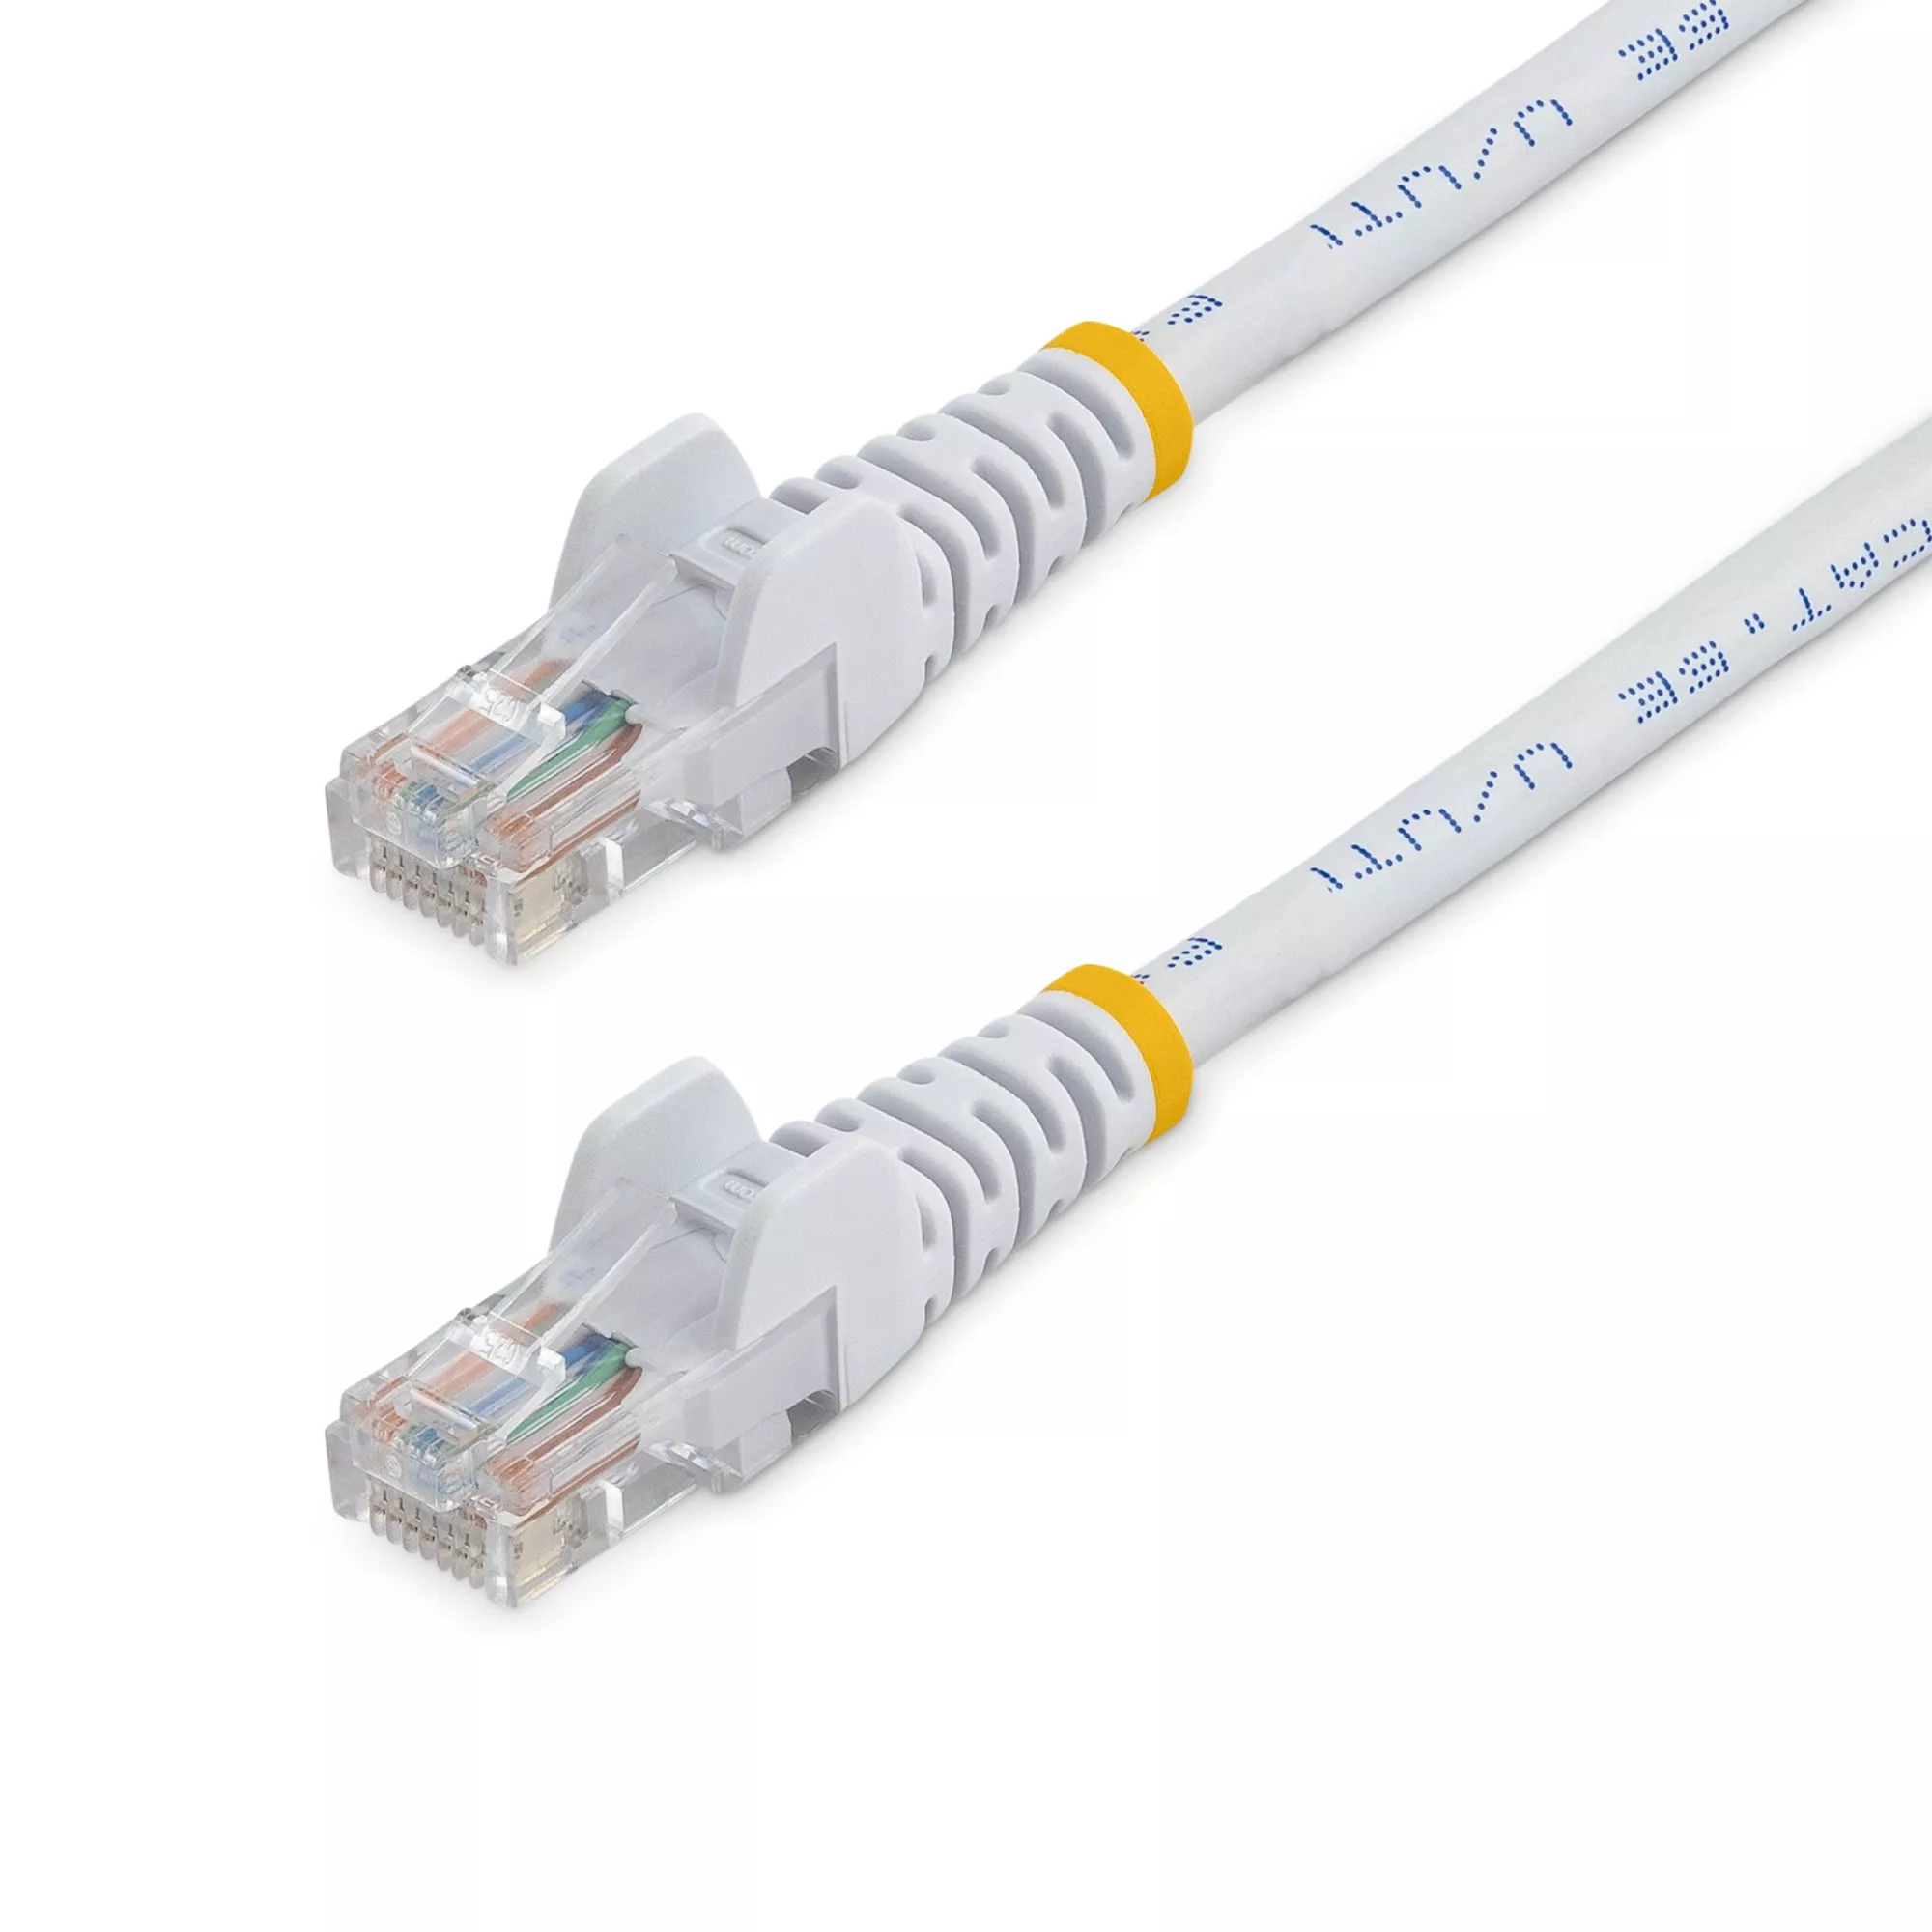 Achat StarTech.com Câble réseau Cat5e sans crochet de 5 m au meilleur prix